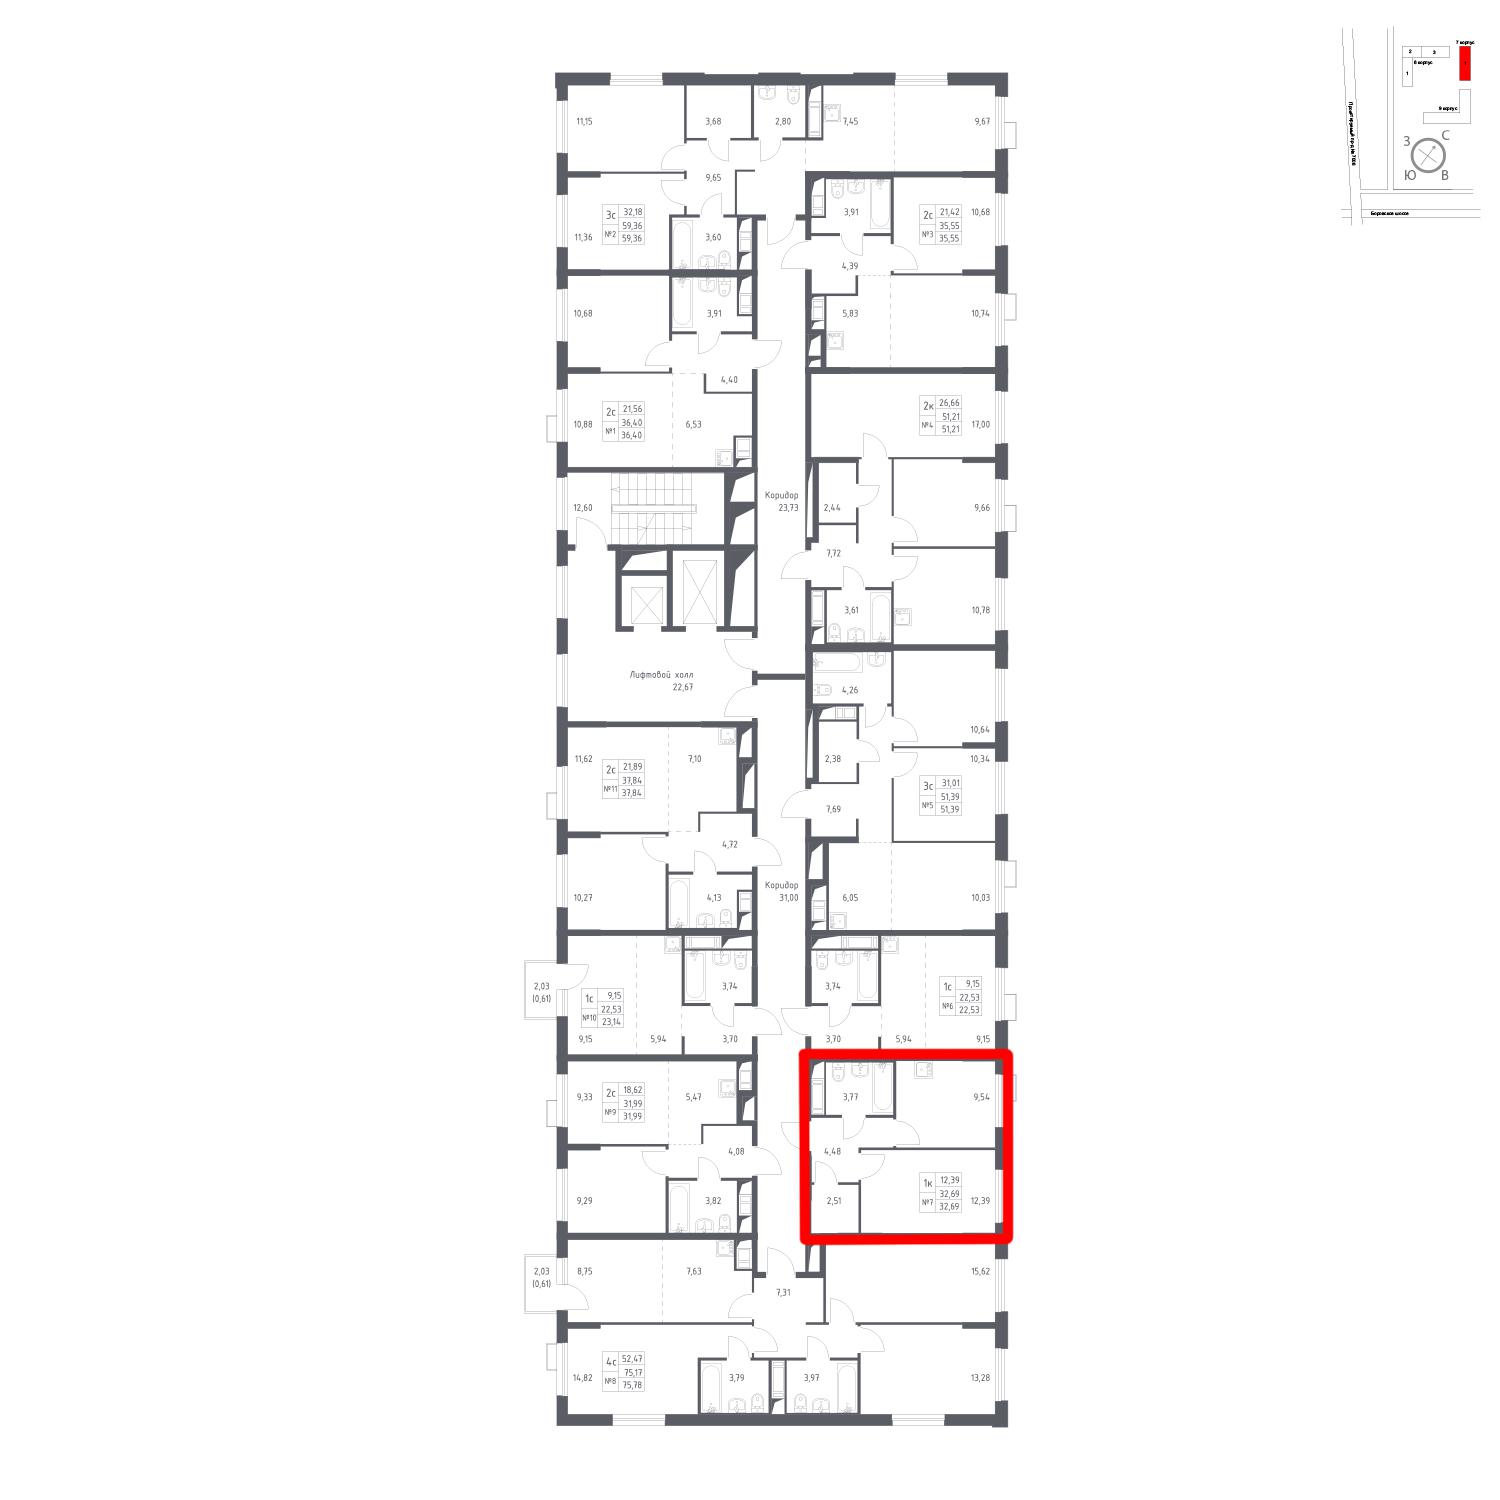 Продаётся 1-комнатная квартира в новостройке 32.7 кв.м. этаж 11/14 за 8 386 875 руб 